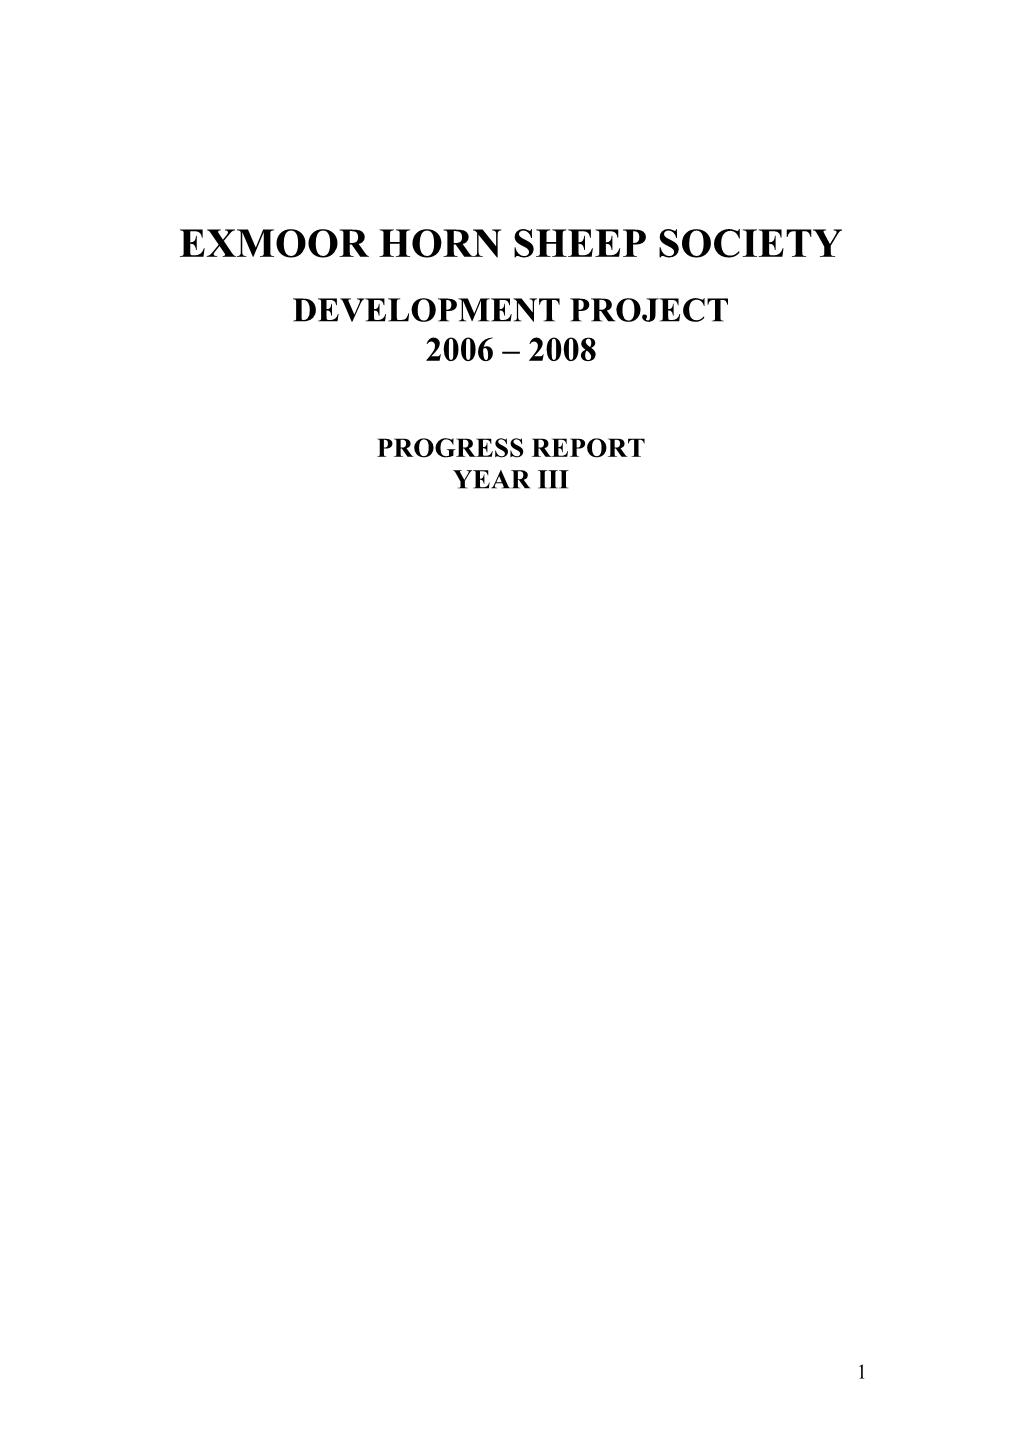 Exmoor Horn Sheep Society